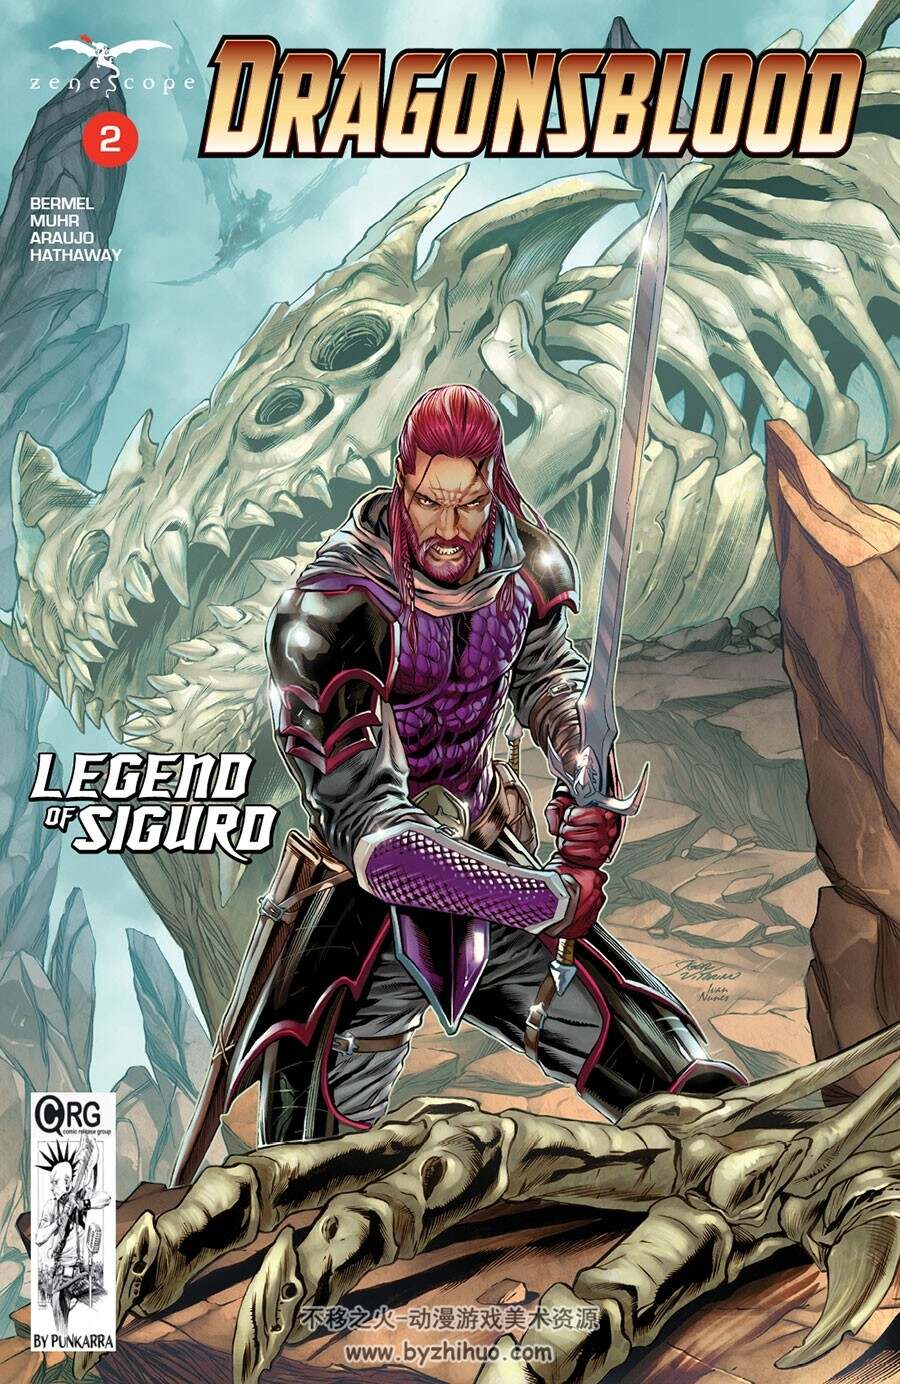 Dragonsblood - Legend of Sigurd 1-2册 Nick Bermel - Jason Muhr - Maxflan Araujo